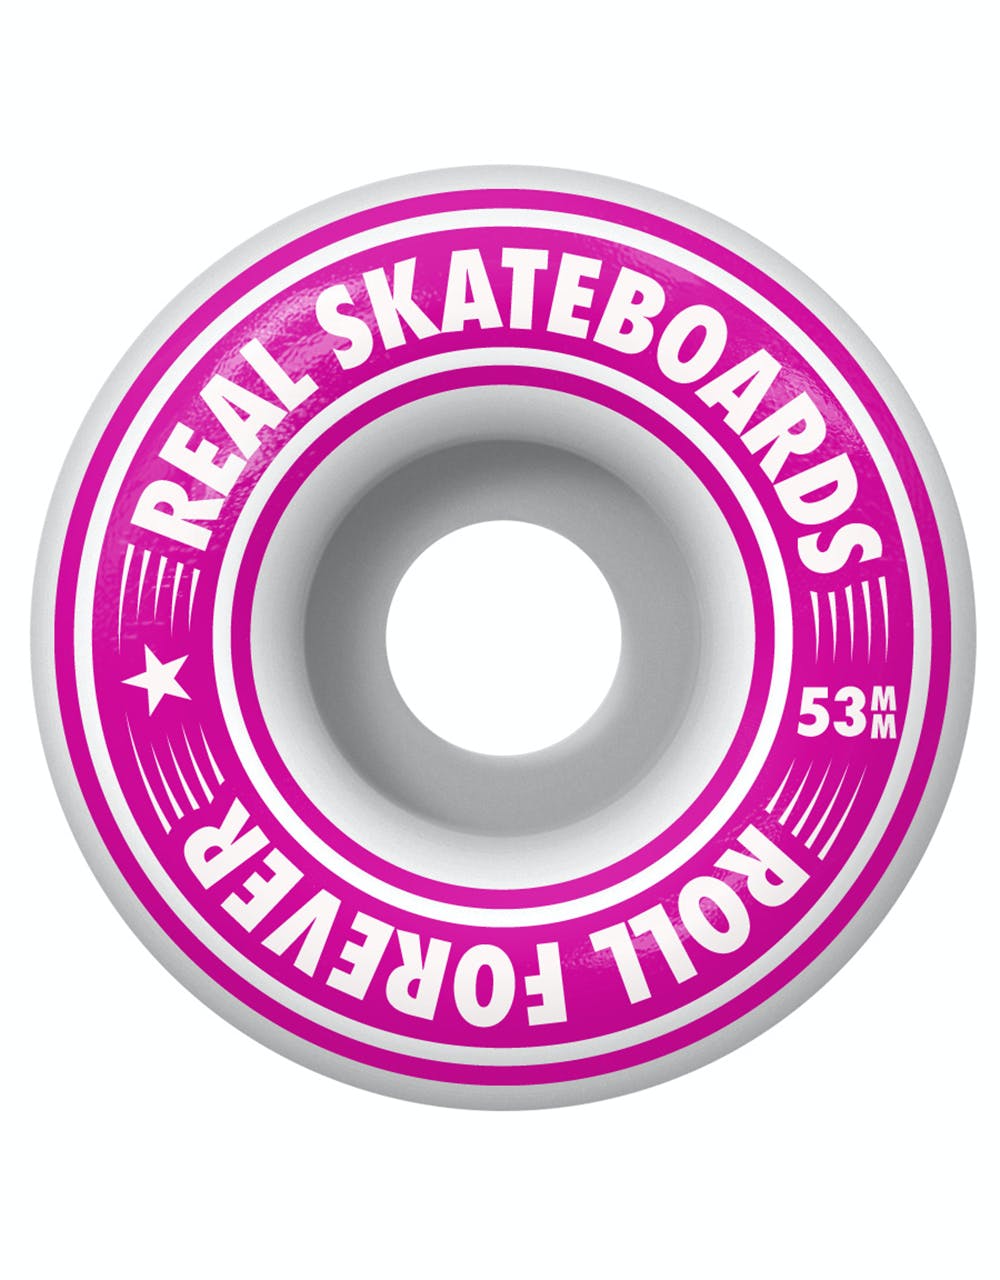 Real Oval Heatwave Complete Skateboard - 8.25"